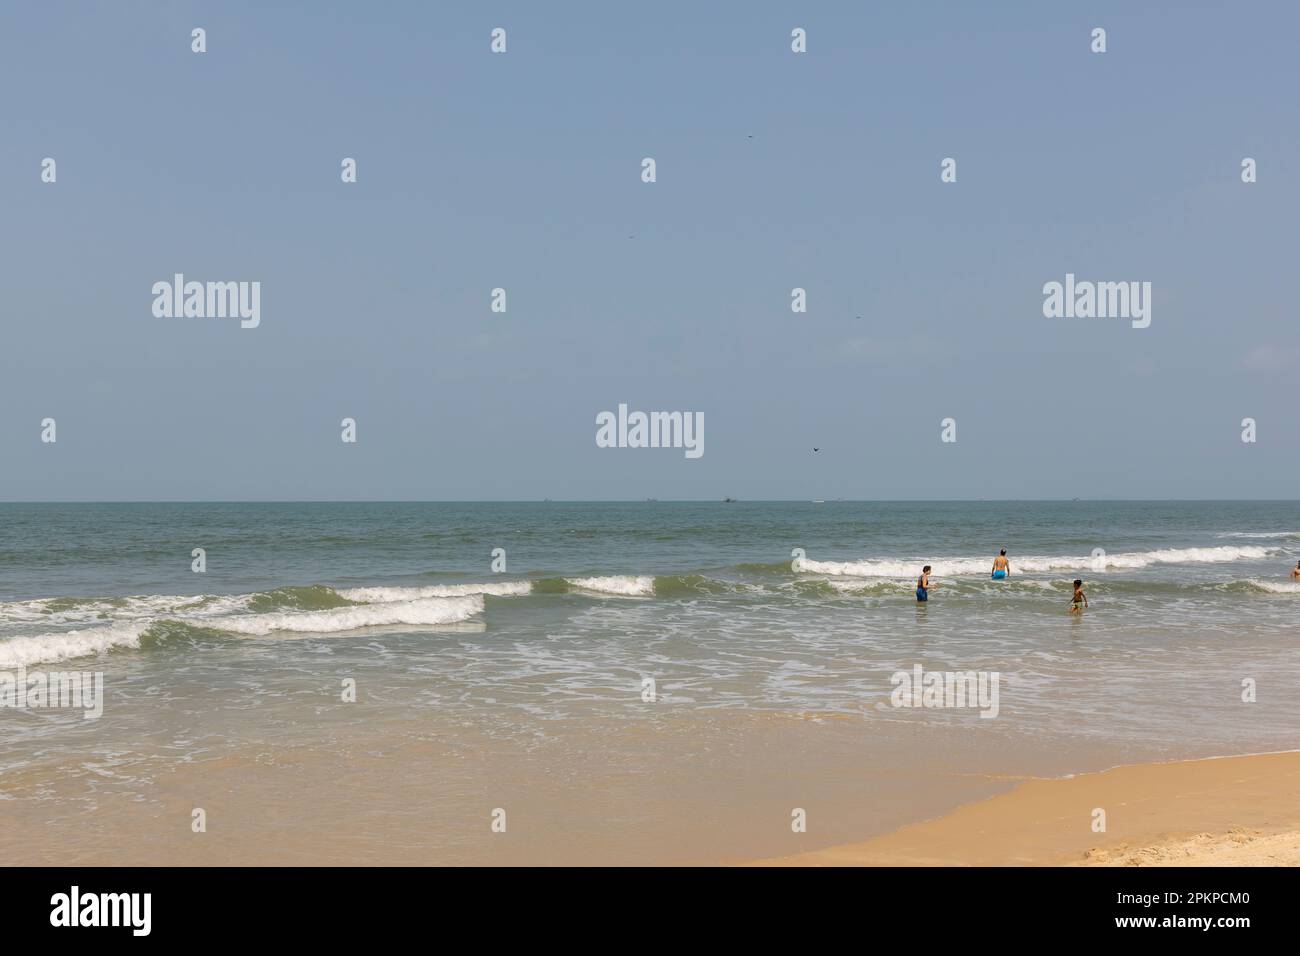 Benaulim Sunny Beach ist ein beliebtes Reiseziel am Meer im indischen Bundesstaat Goa. Der Strand ist bekannt für seinen goldenen Sand und das klare blaue Wasser Stockfoto